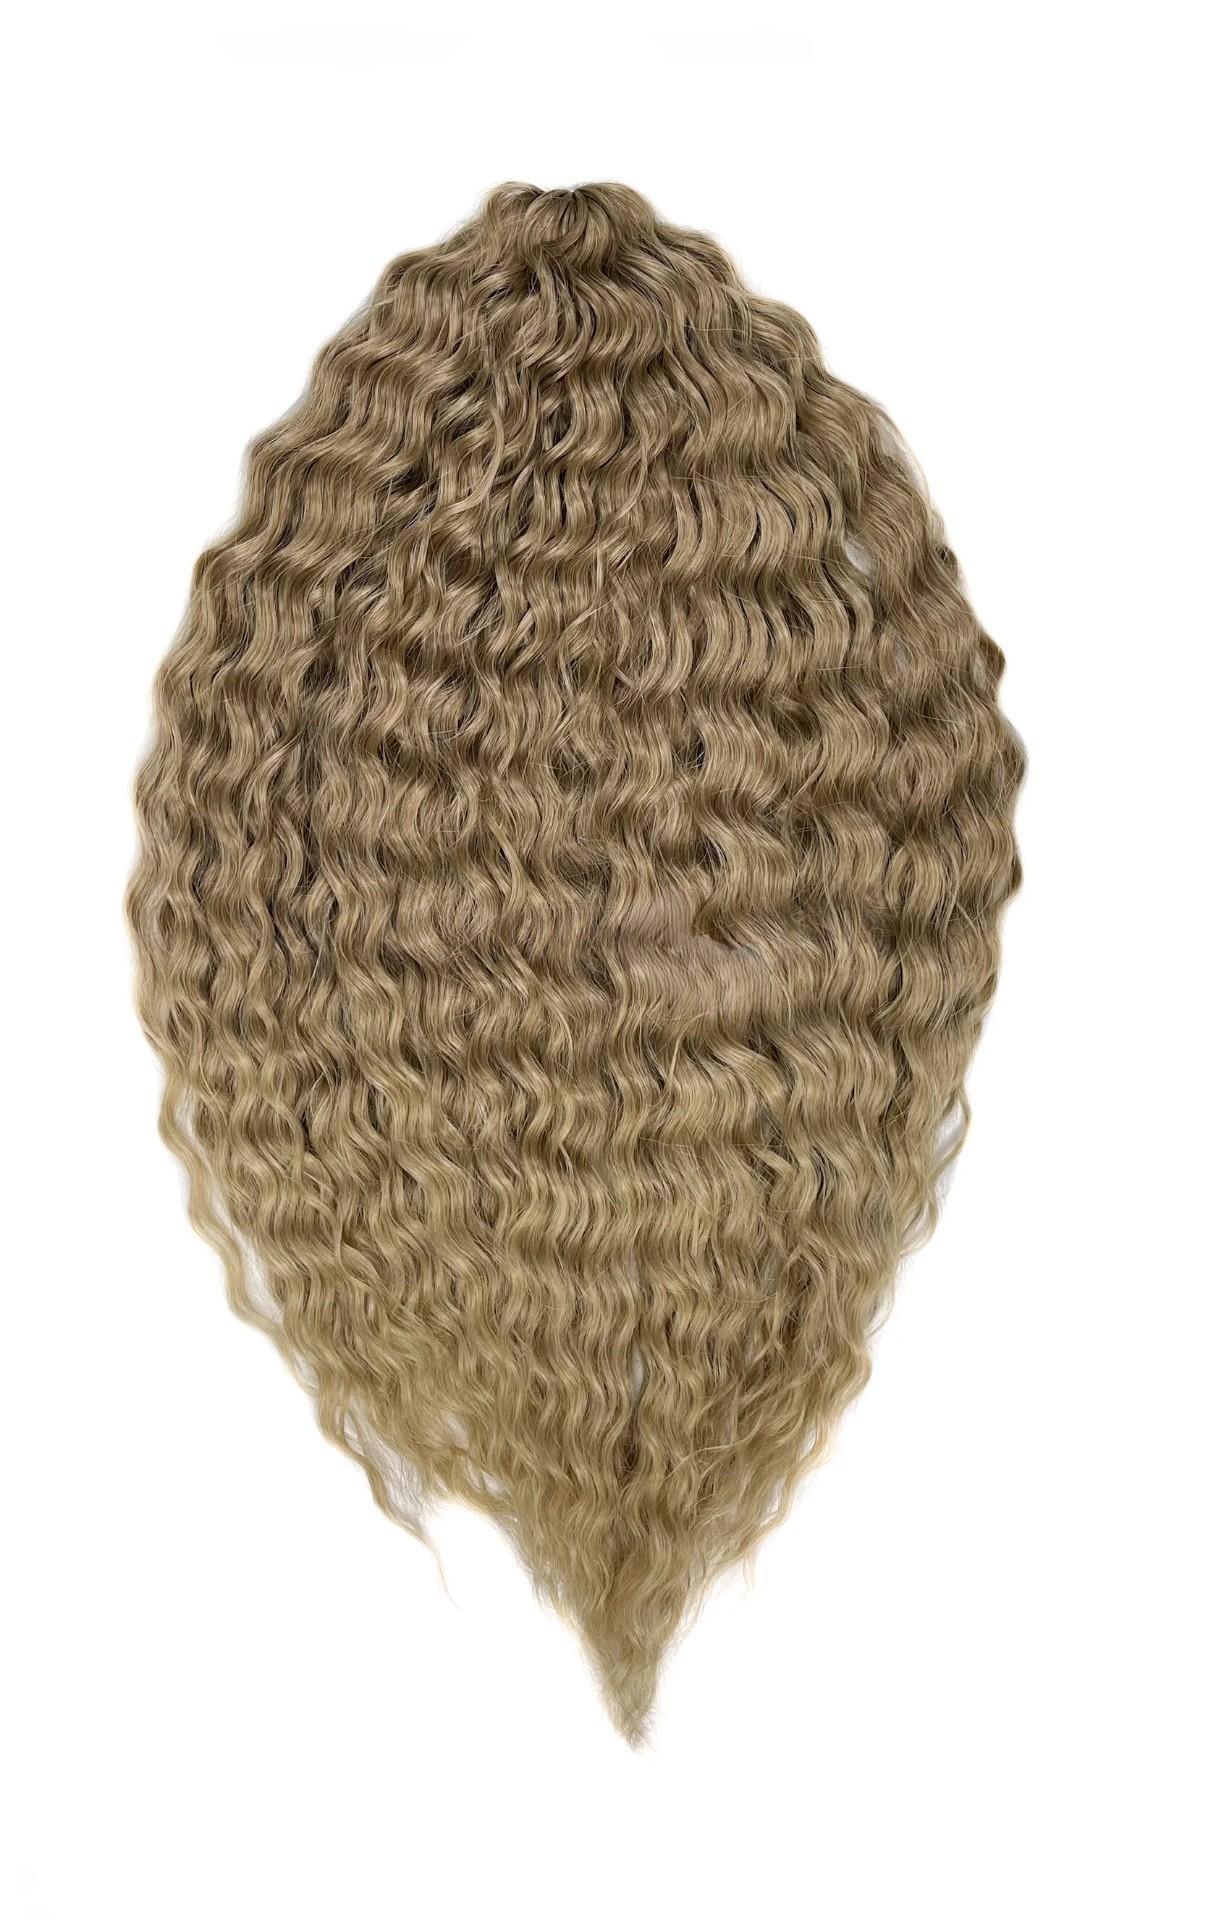 Афрокудри для плетения волос Ariel цвет Т14 24D светло русый 55см вес 300г салфетка микрофибра особого плетения для стекол и зеркал avs mf 6106 35 х 40 см